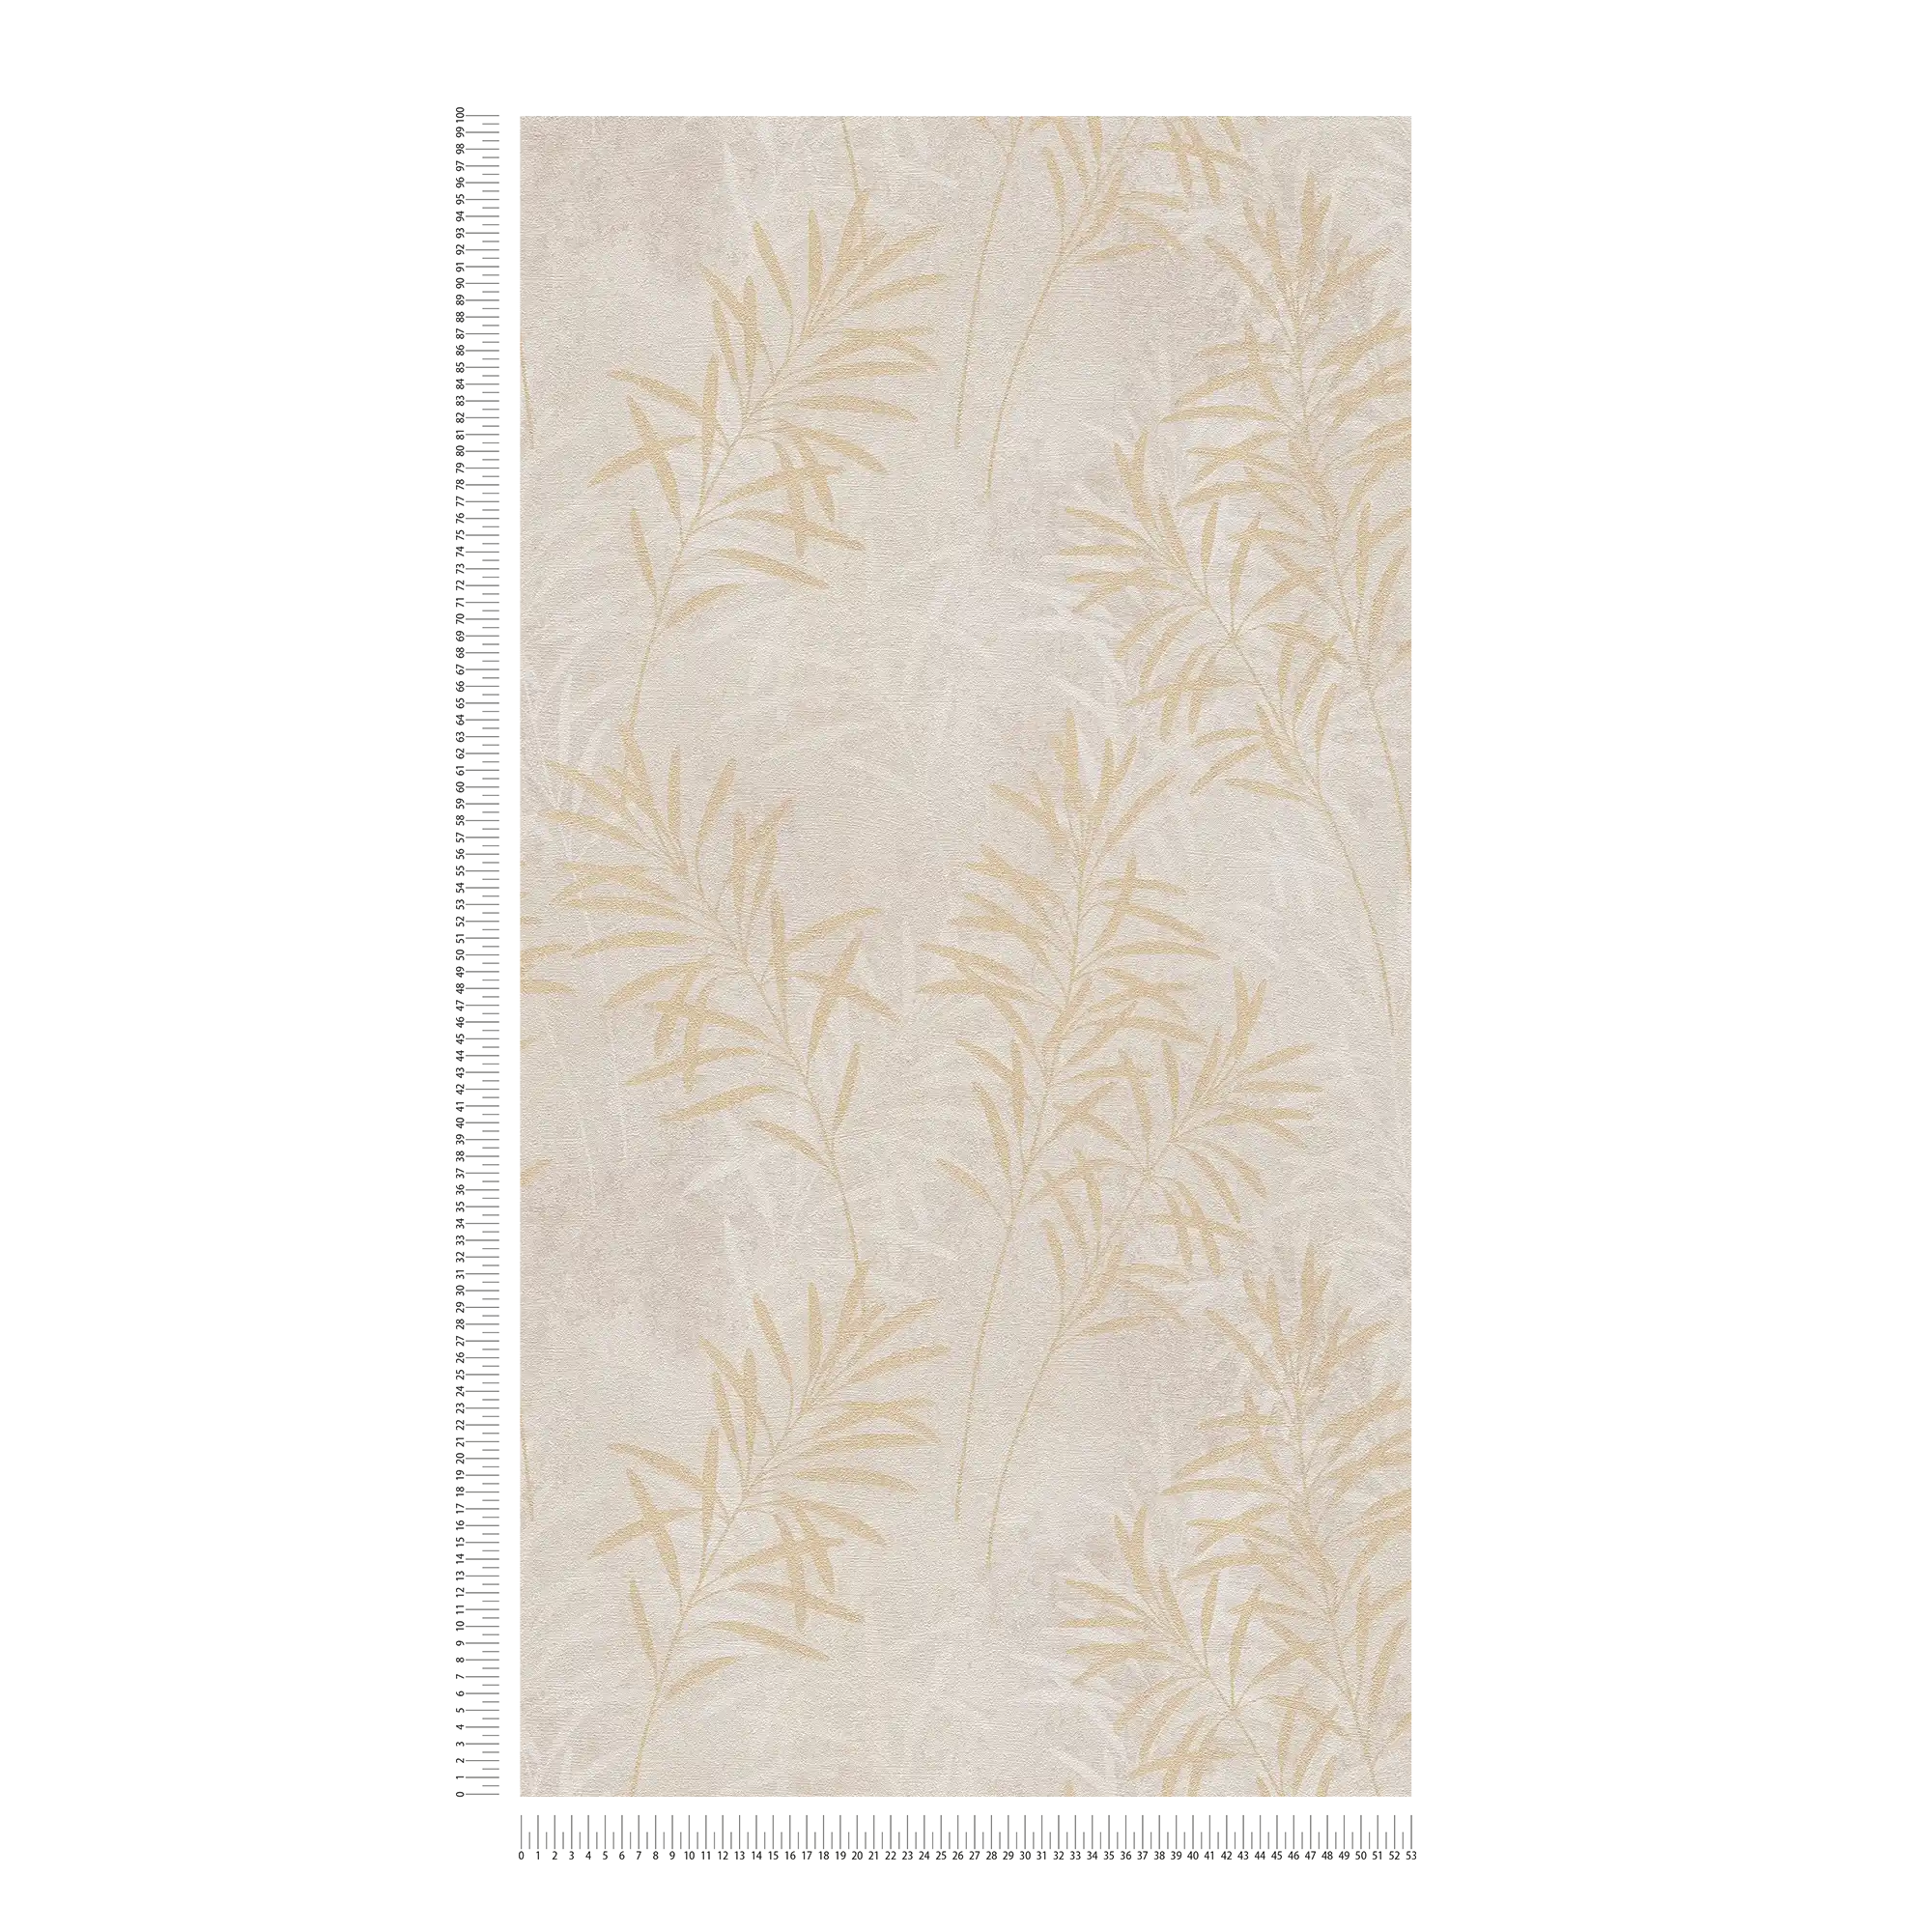             Vliestapete mit floralem Palmen-Muster – Creme, Grau, Gold
        